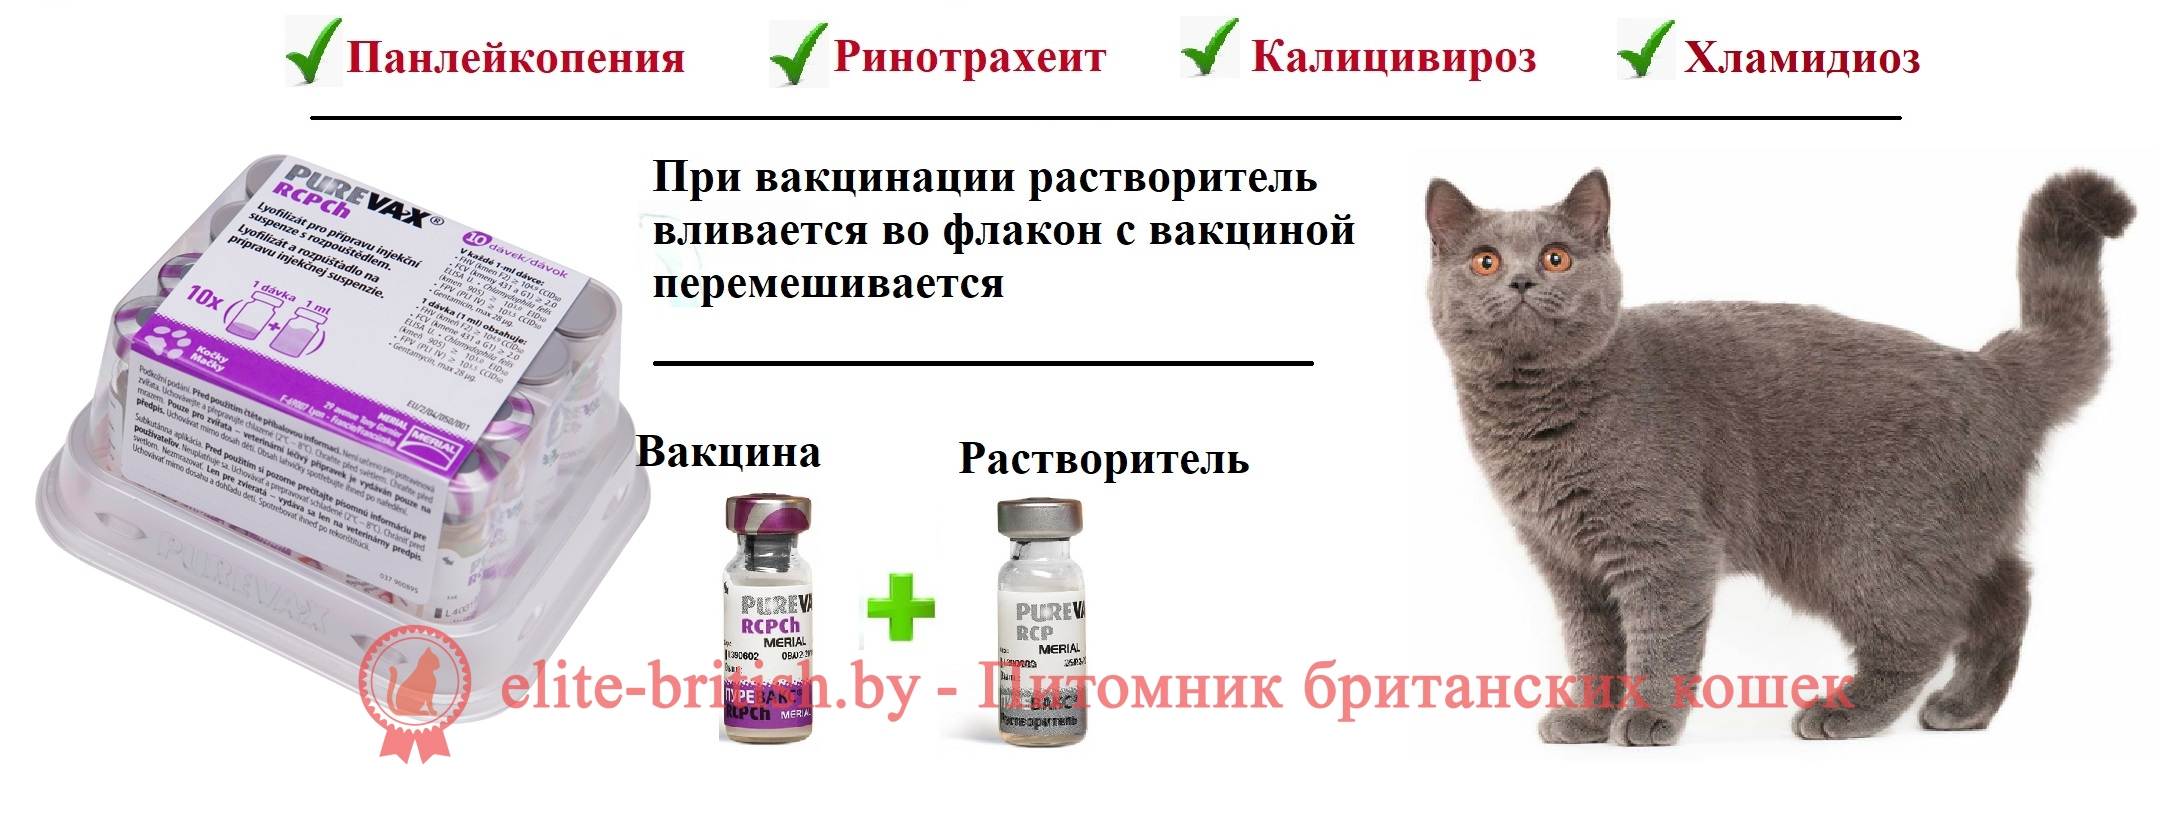 Цены прививок для котят